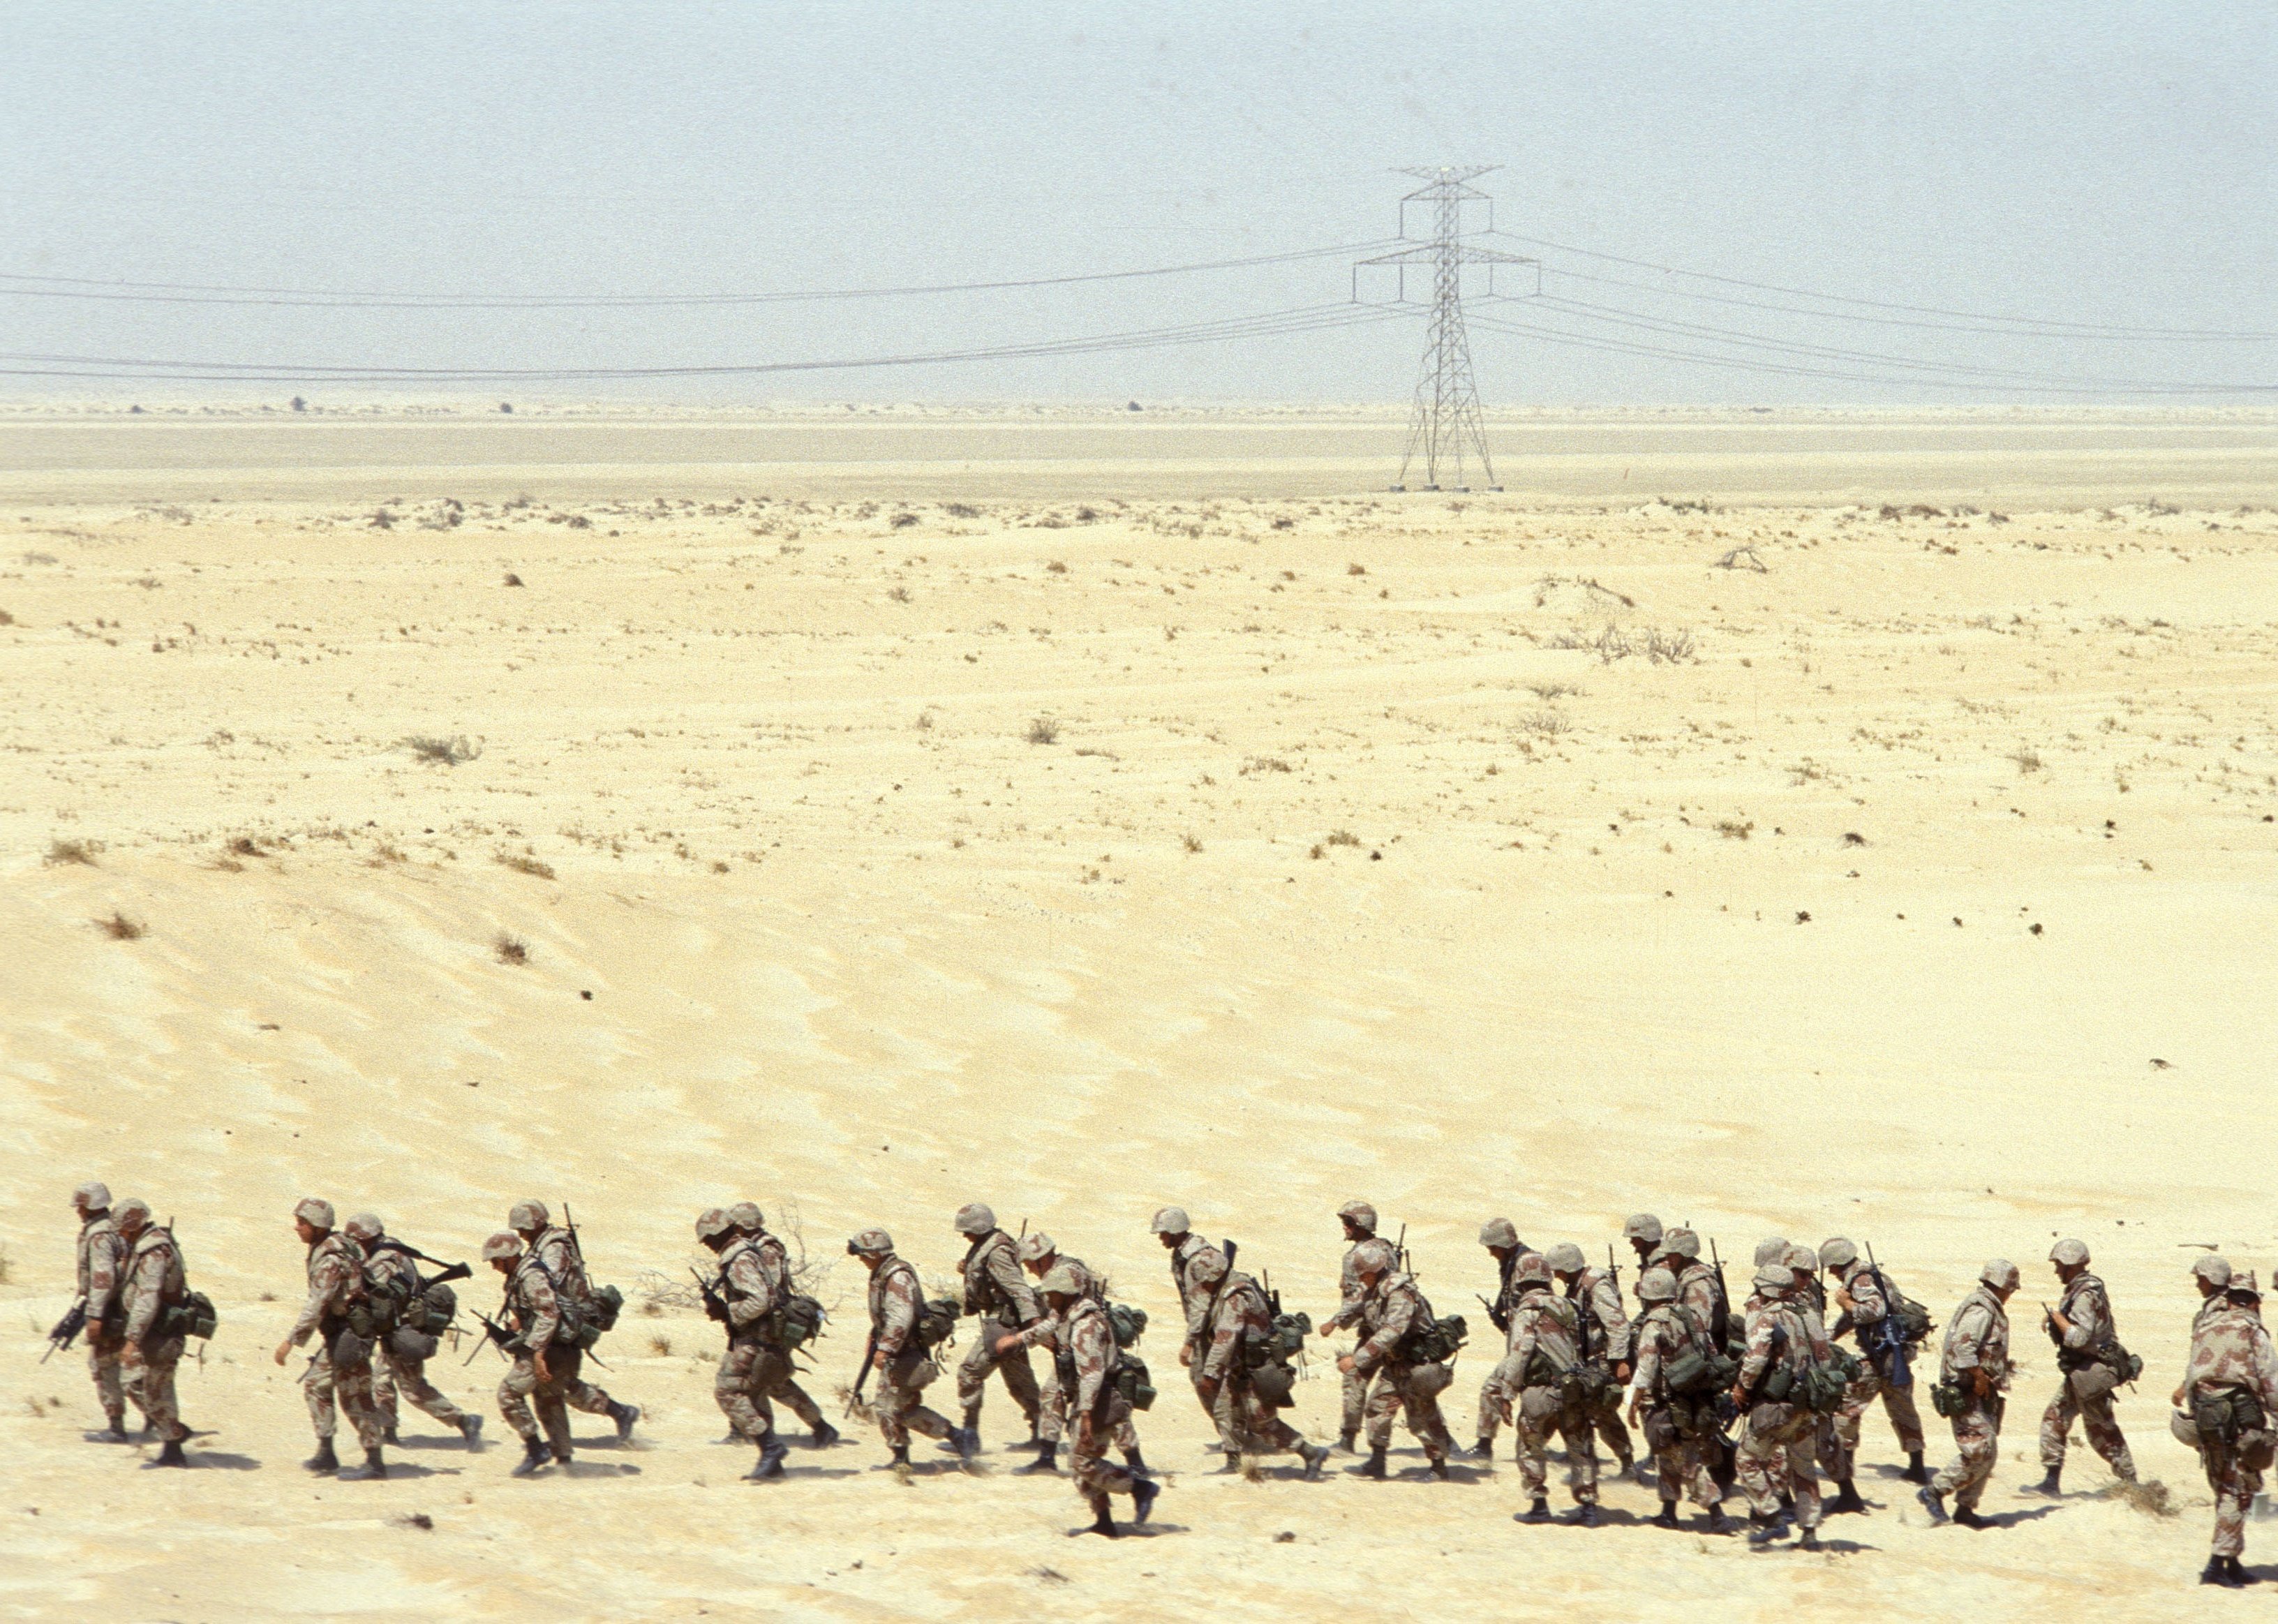  American troops at Dahran airport in Saudi Arabia, during Operation Desert Shield.